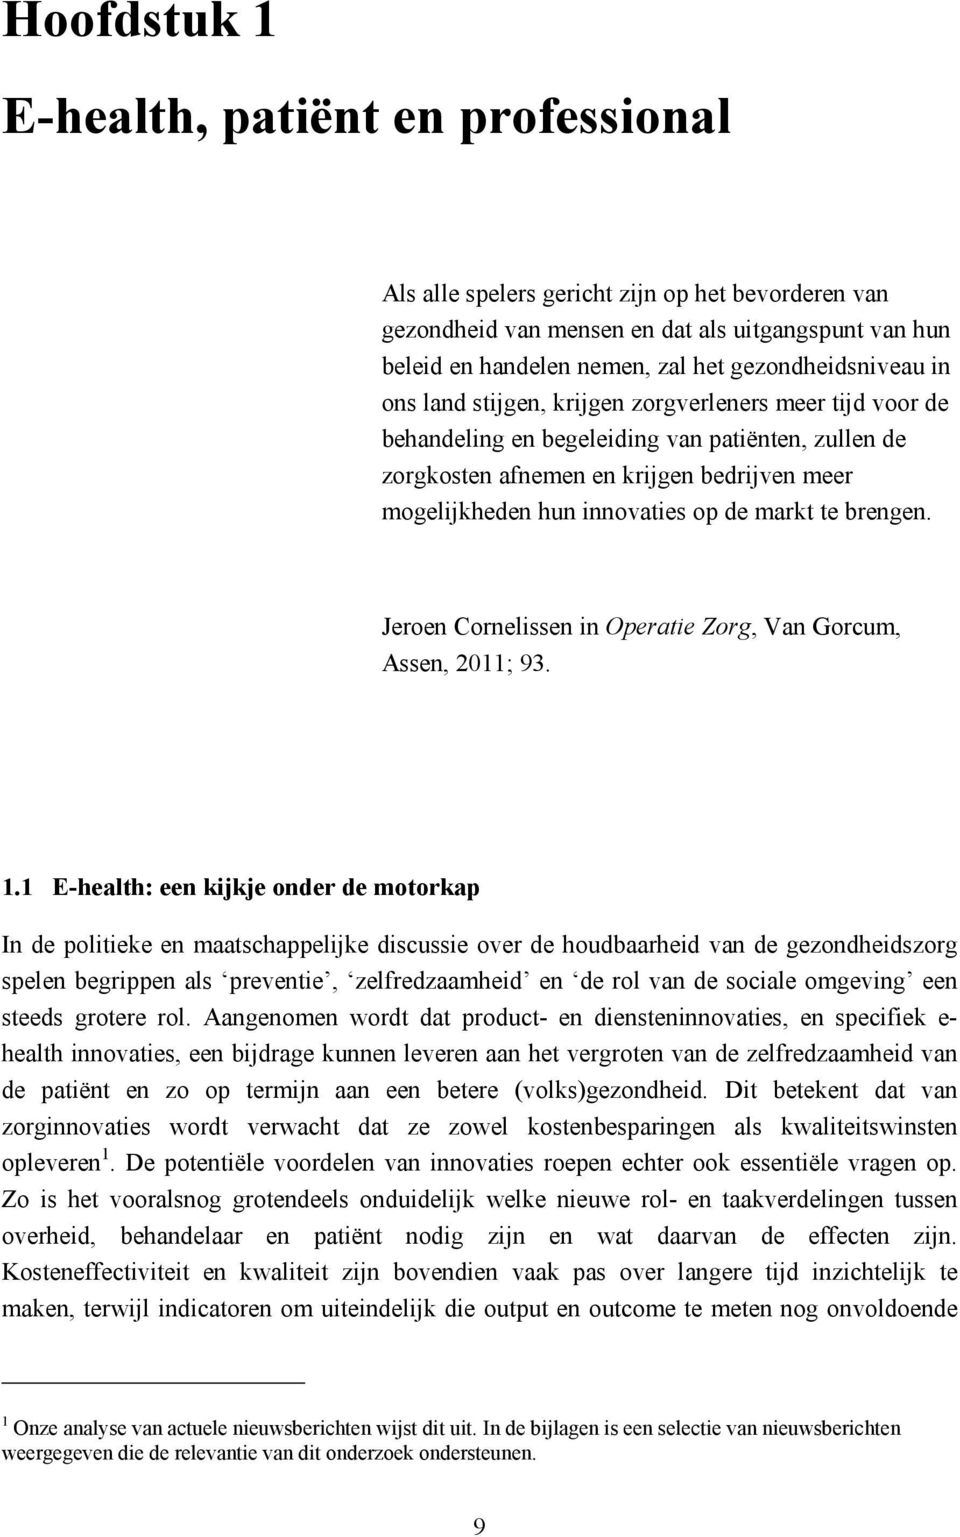 innovaties op de markt te brengen. Jeroen Cornelissen in Operatie Zorg, Van Gorcum, Assen, 2011; 93. 1.